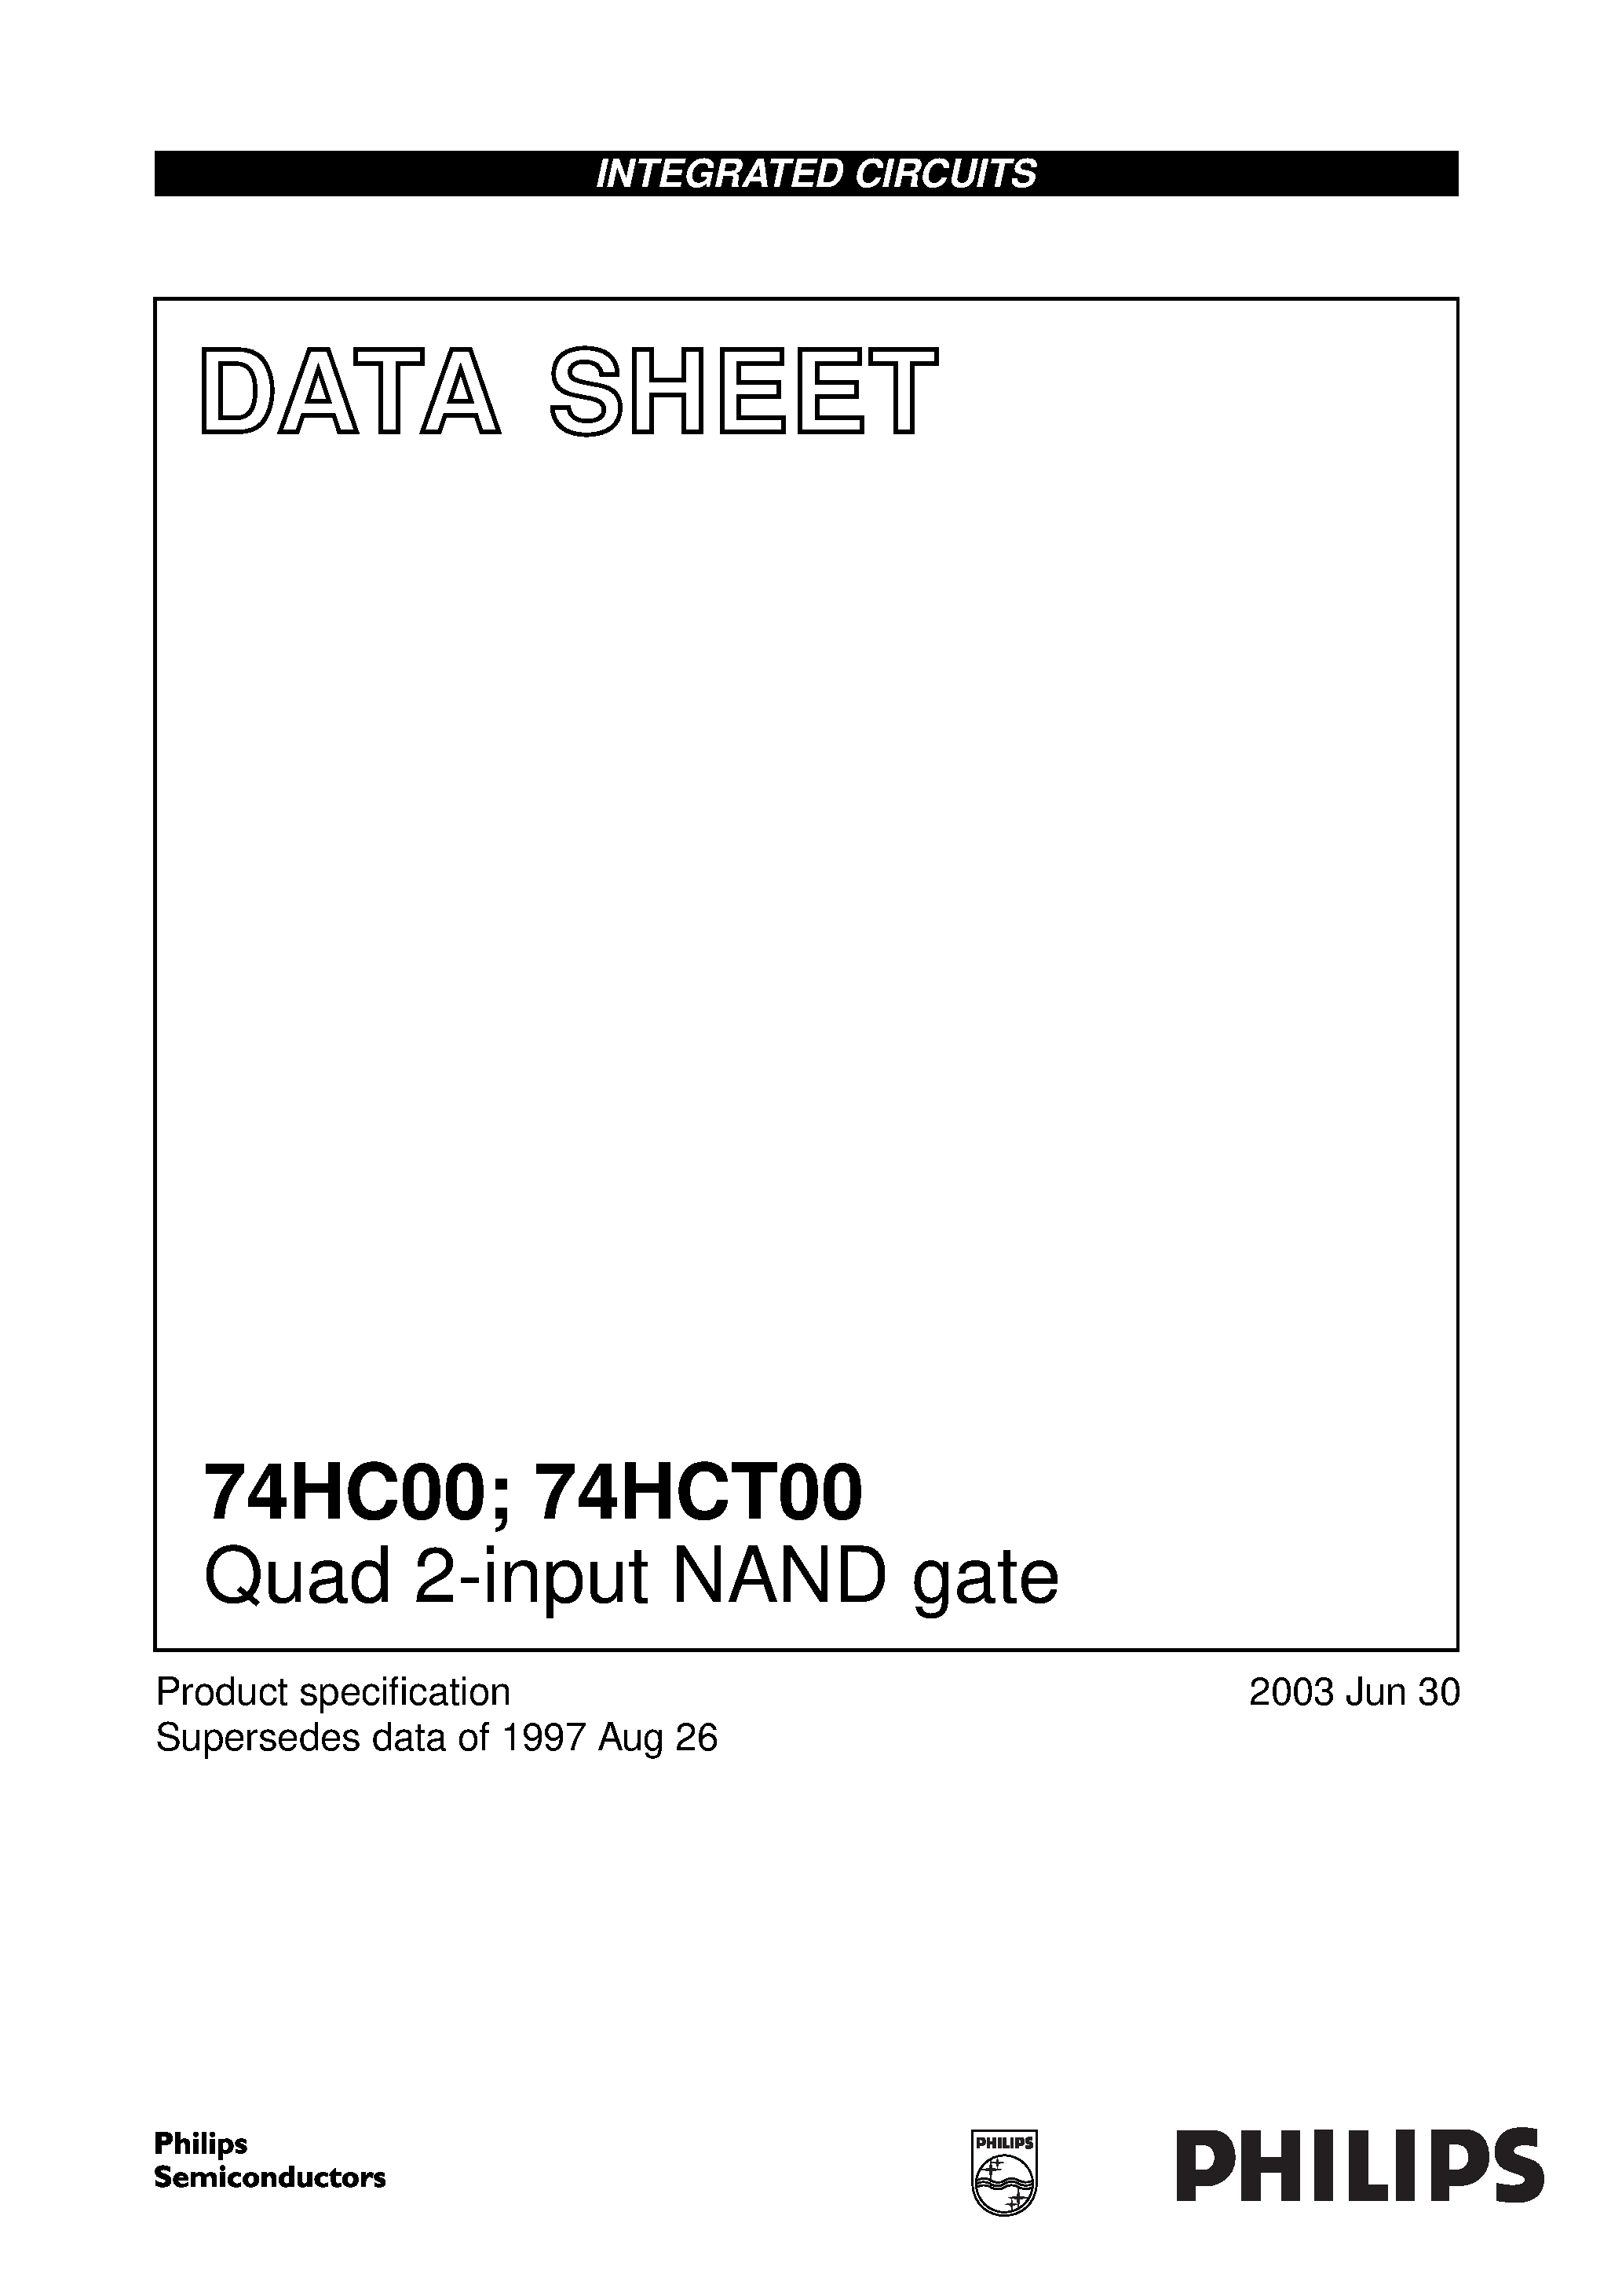 Даташит 74HCT00BQ - Quad 2-input NAND gate страница 1